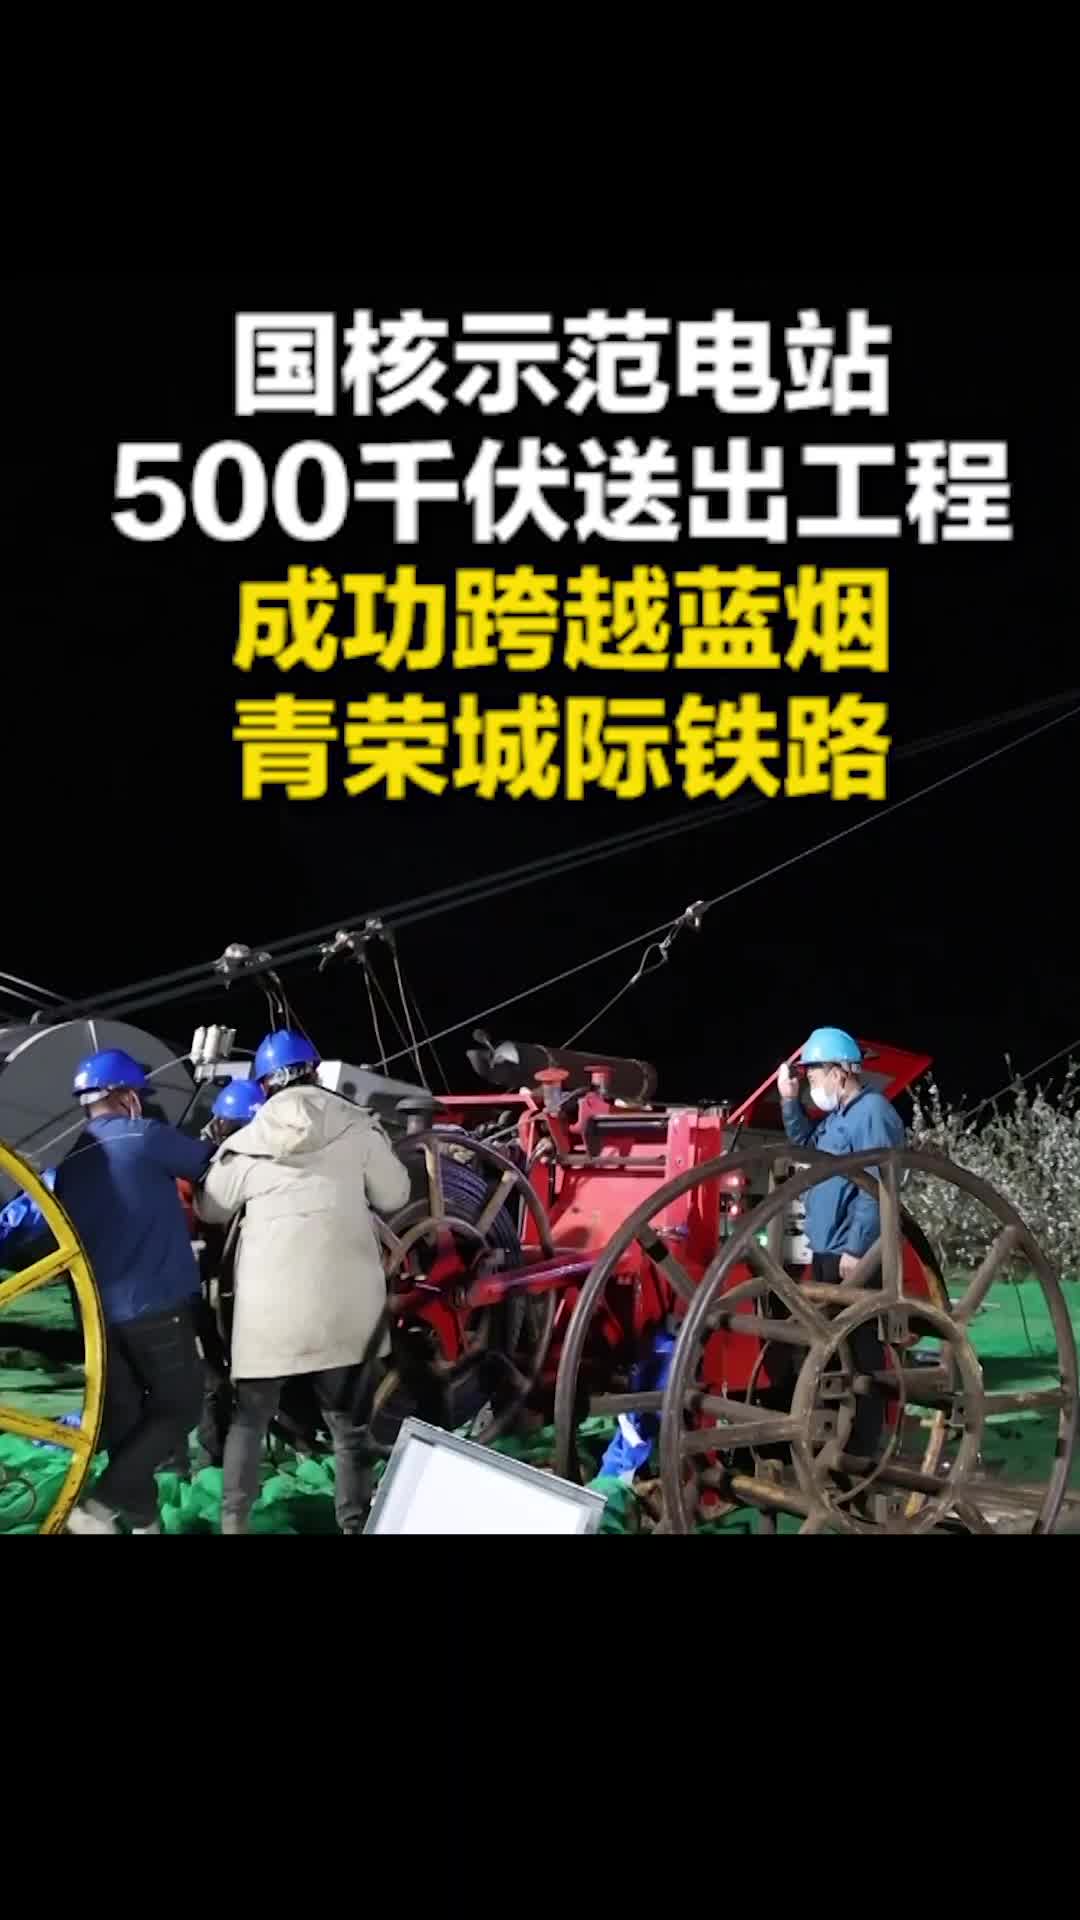 国核示范电站500千伏送出工程 成功跨越蓝烟 青荣城际铁路